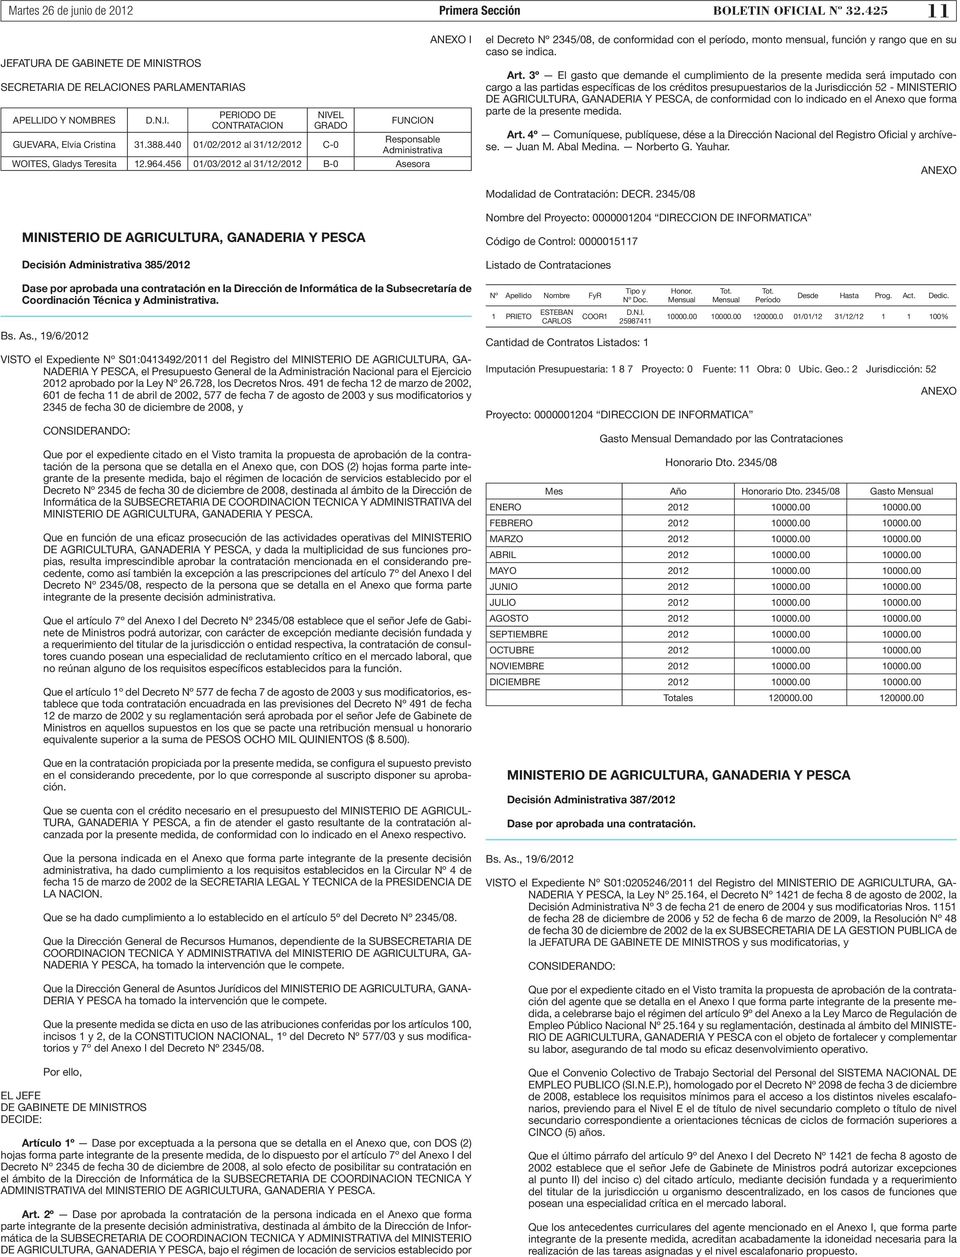 440 01/02/2012 al 31/12/2012 C-0 Responsable Administrativa WOITES, Gladys Teresita 12.964.